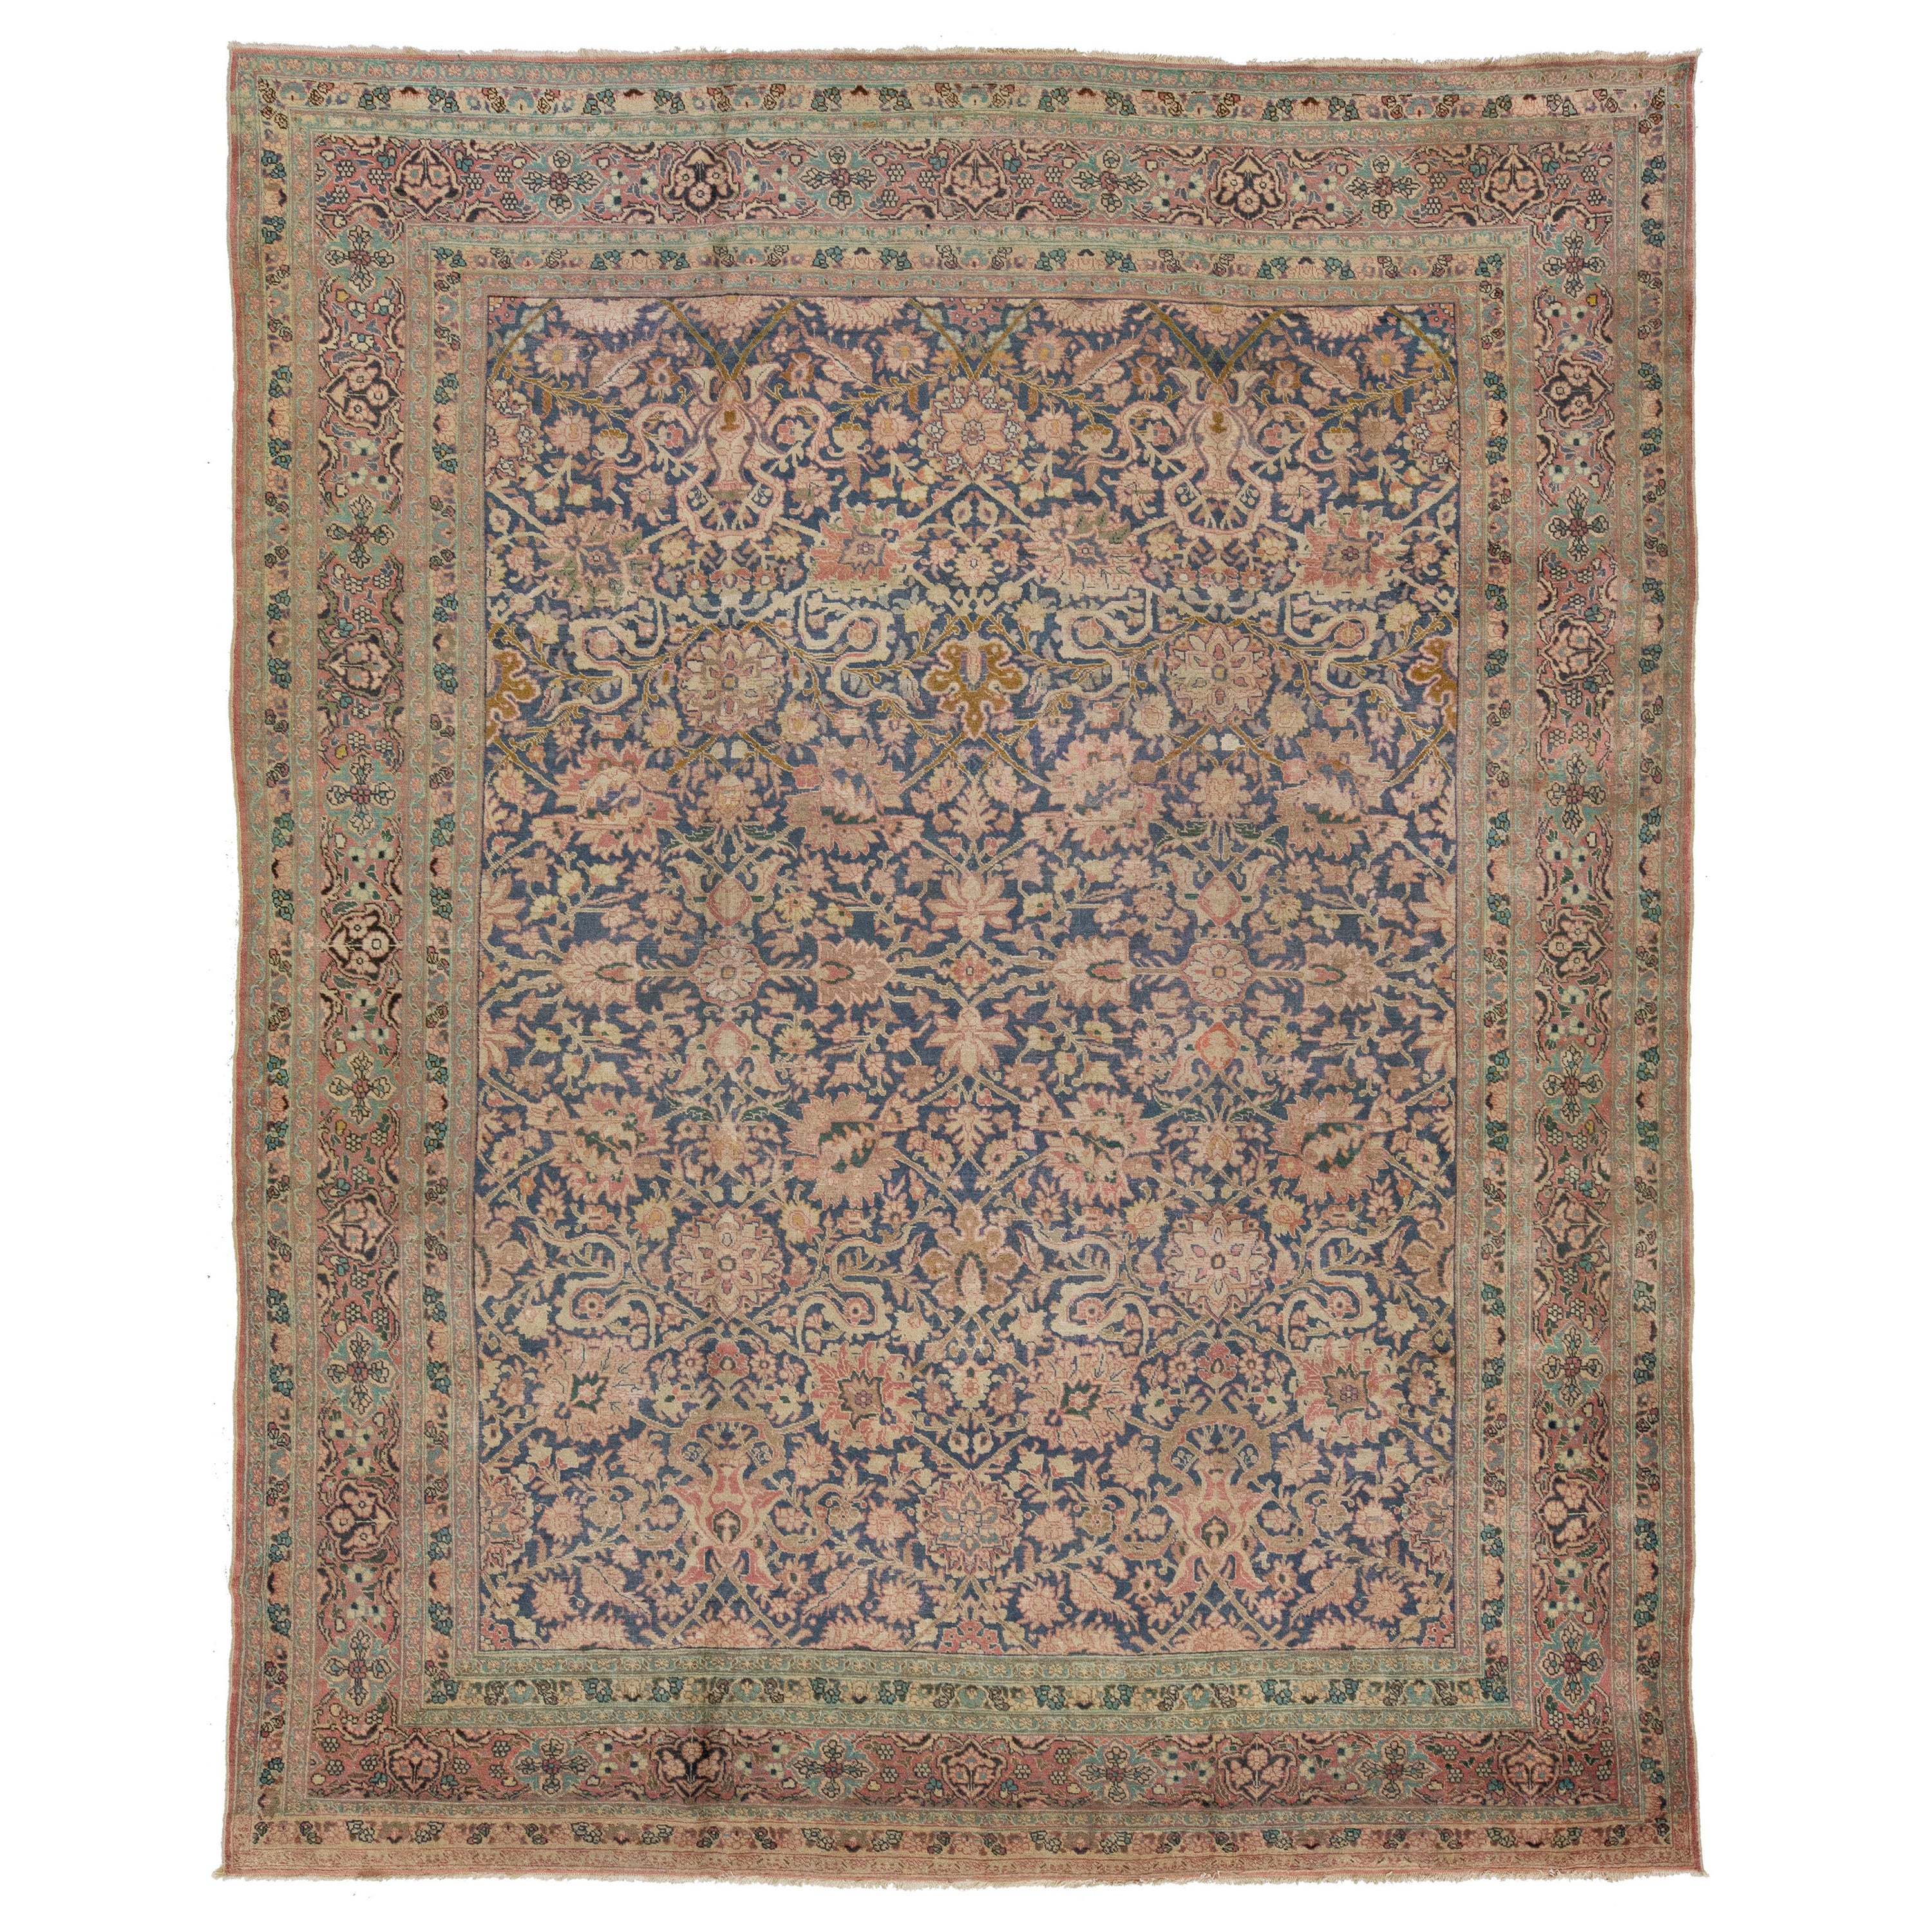 1920er Jahre antike persische Tabriz blaue Wolle Teppich mit Allover-blumige Muster